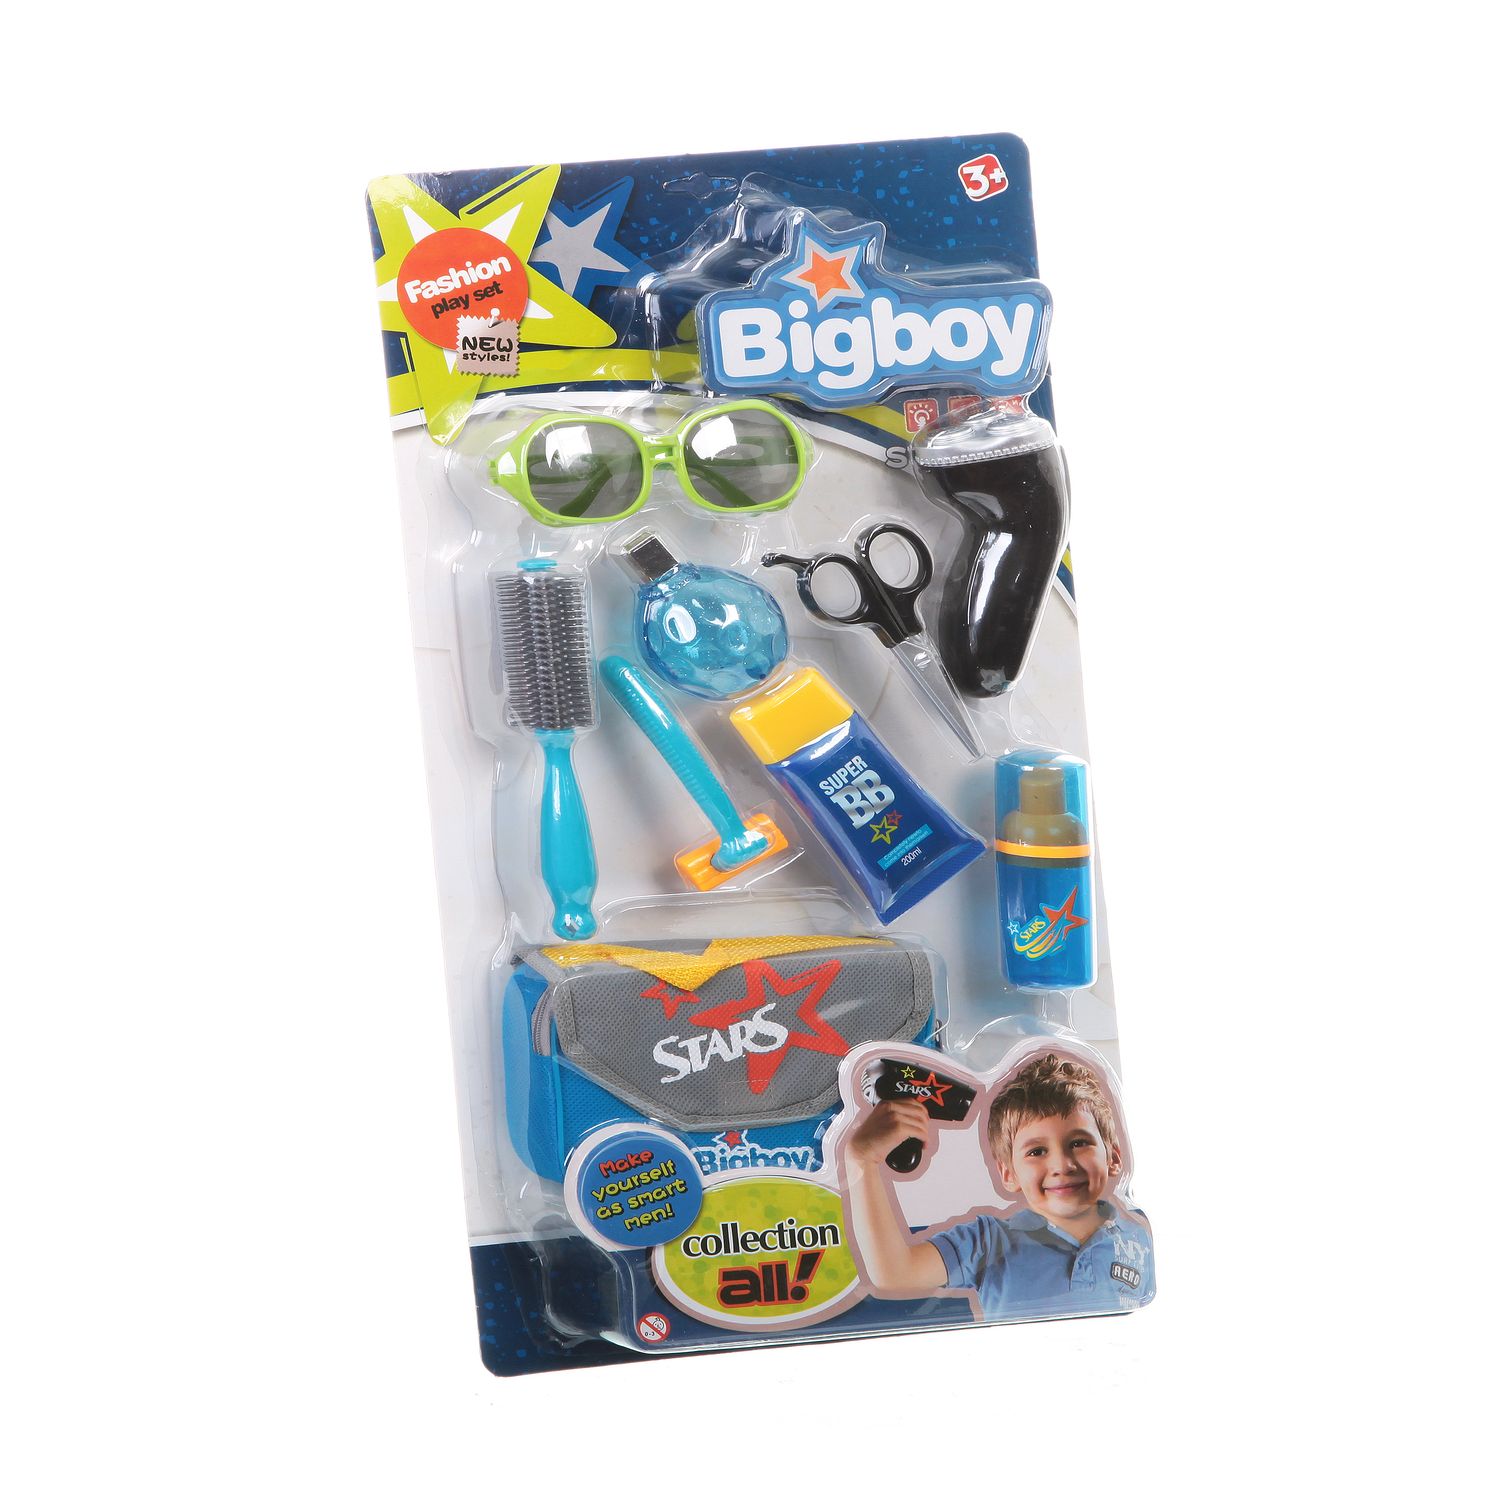 ЯД57610 Игр. набор Bigboy аксессуары для мальчика,